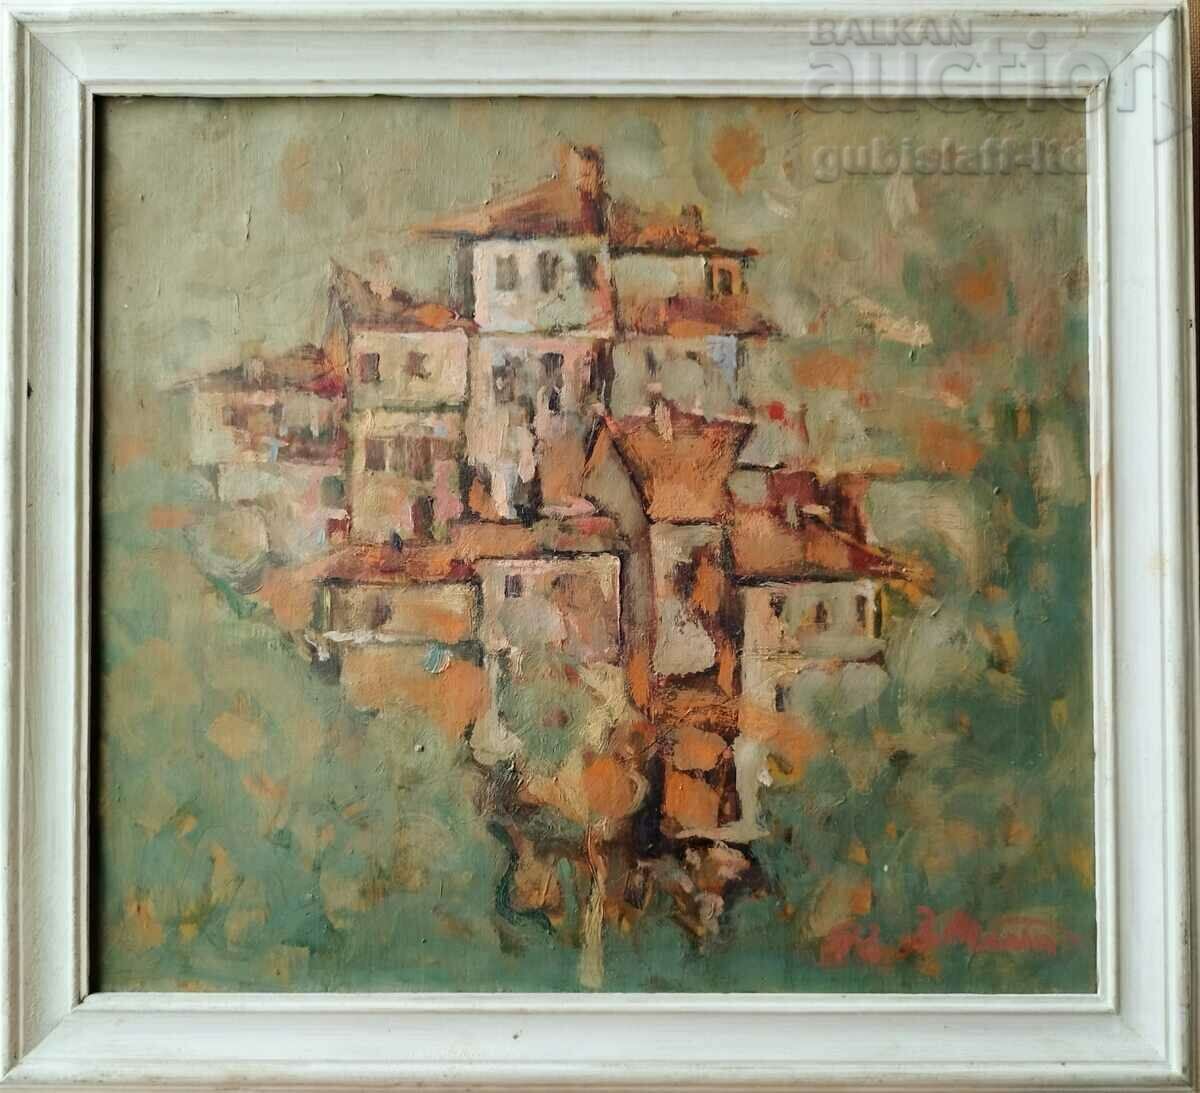 Πίνακας "Η Παλιά Πόλη", 1998, άρ. Velo Mitev (1948-2011)